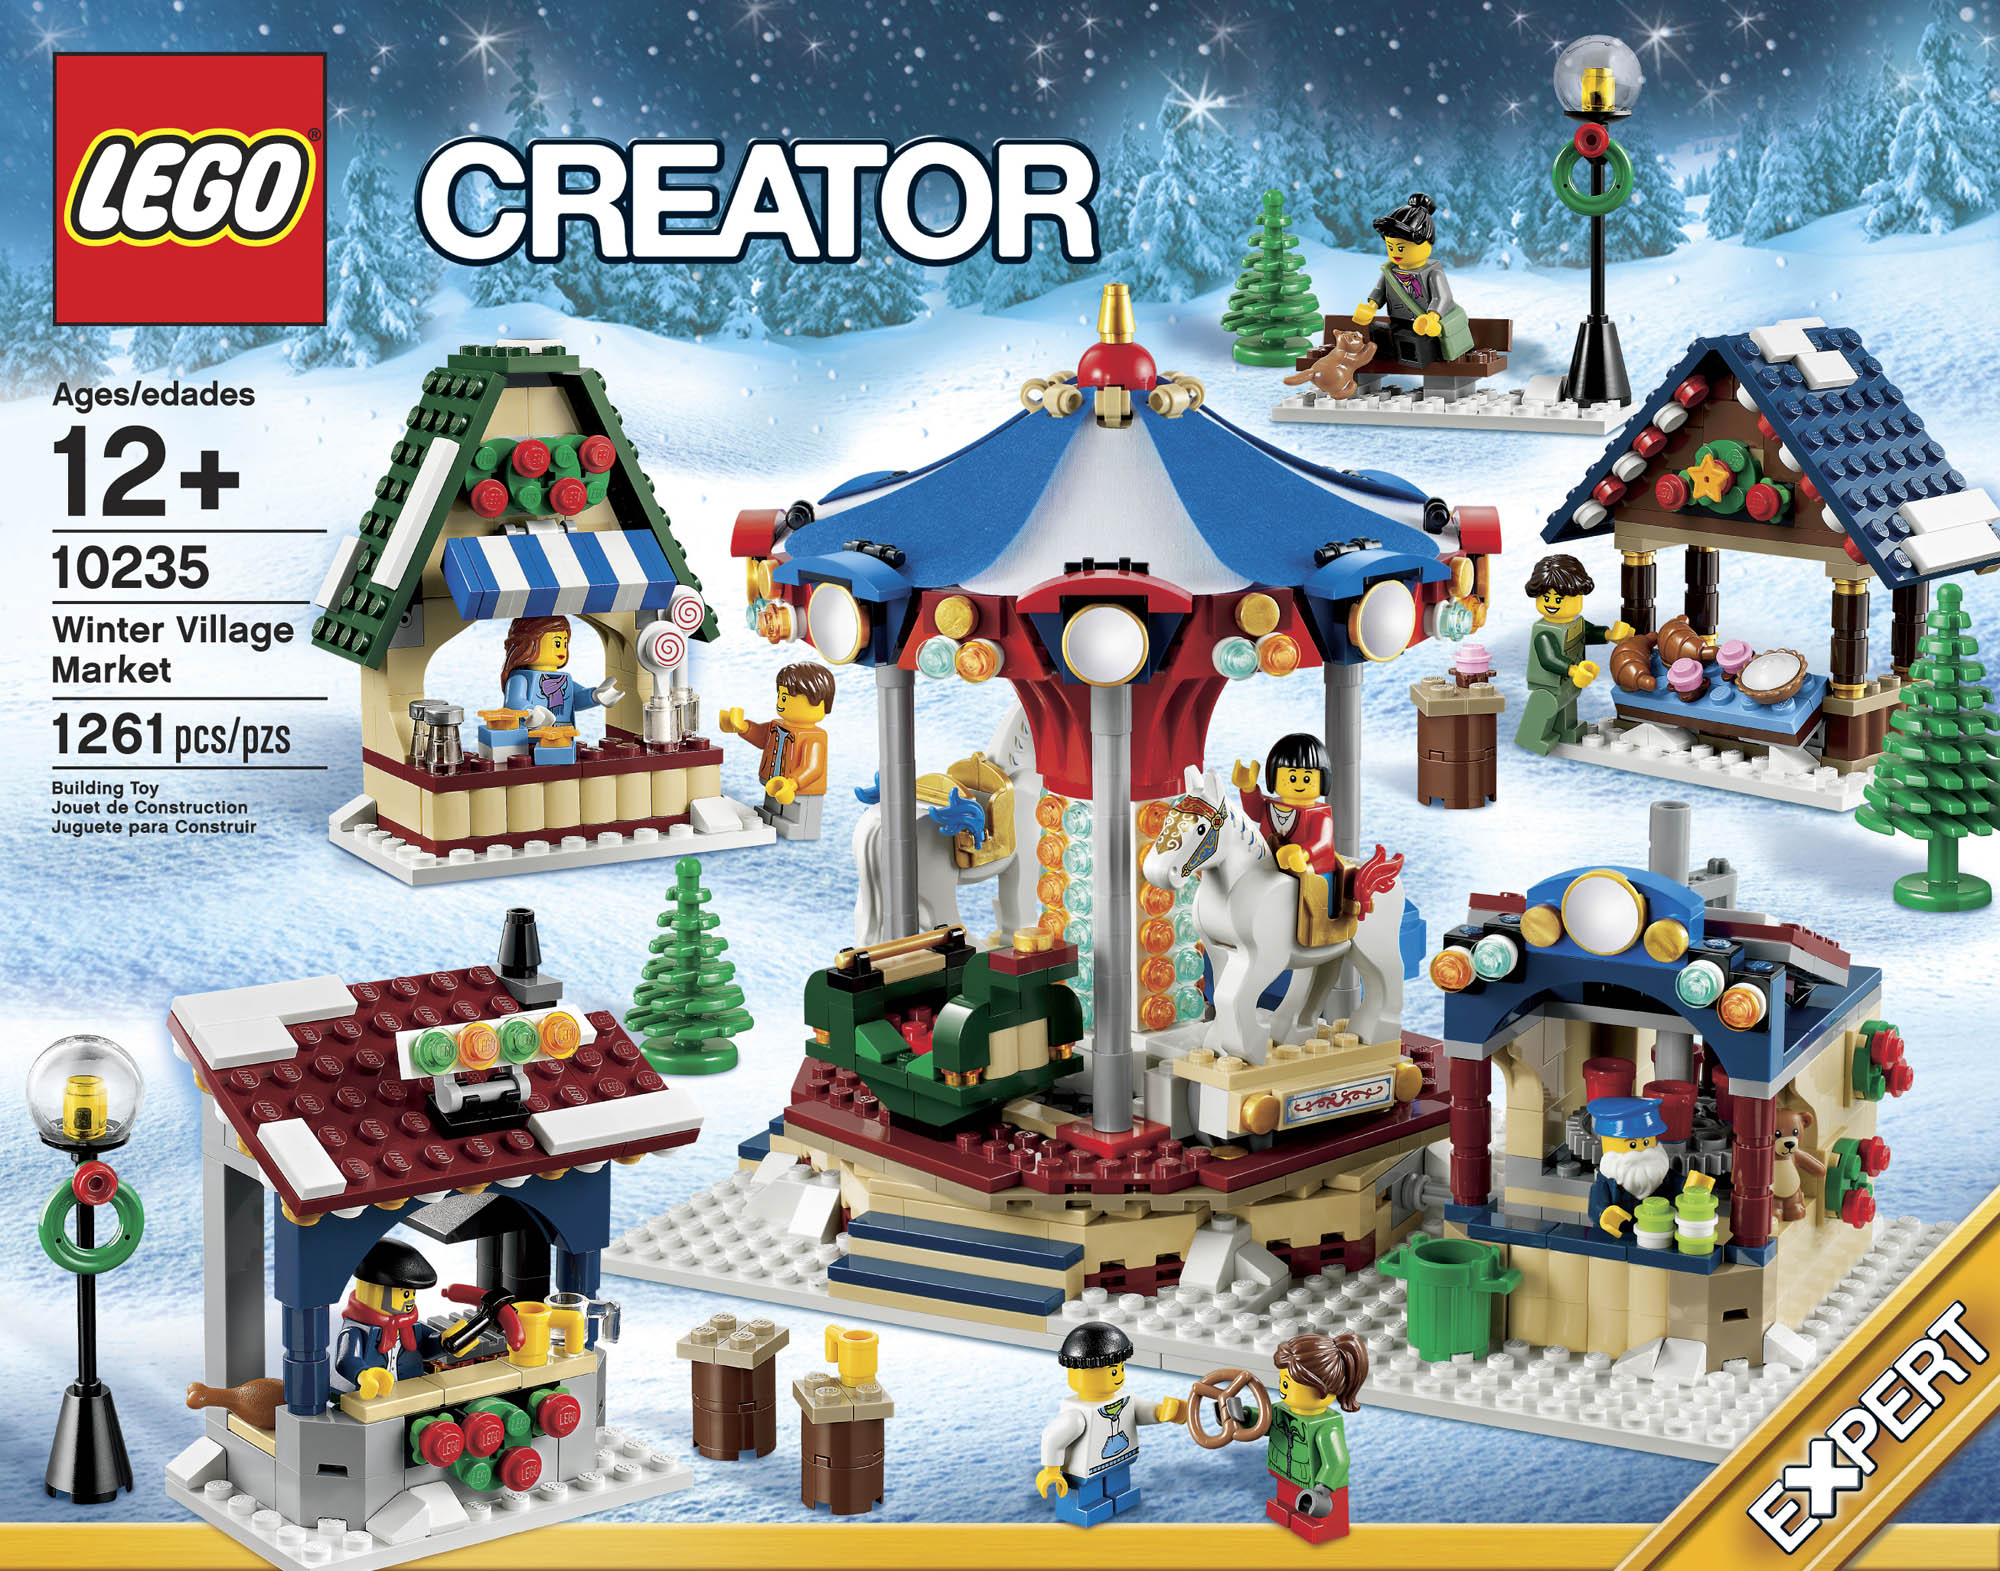 LEGO Reveals 10235 Winter Village Market